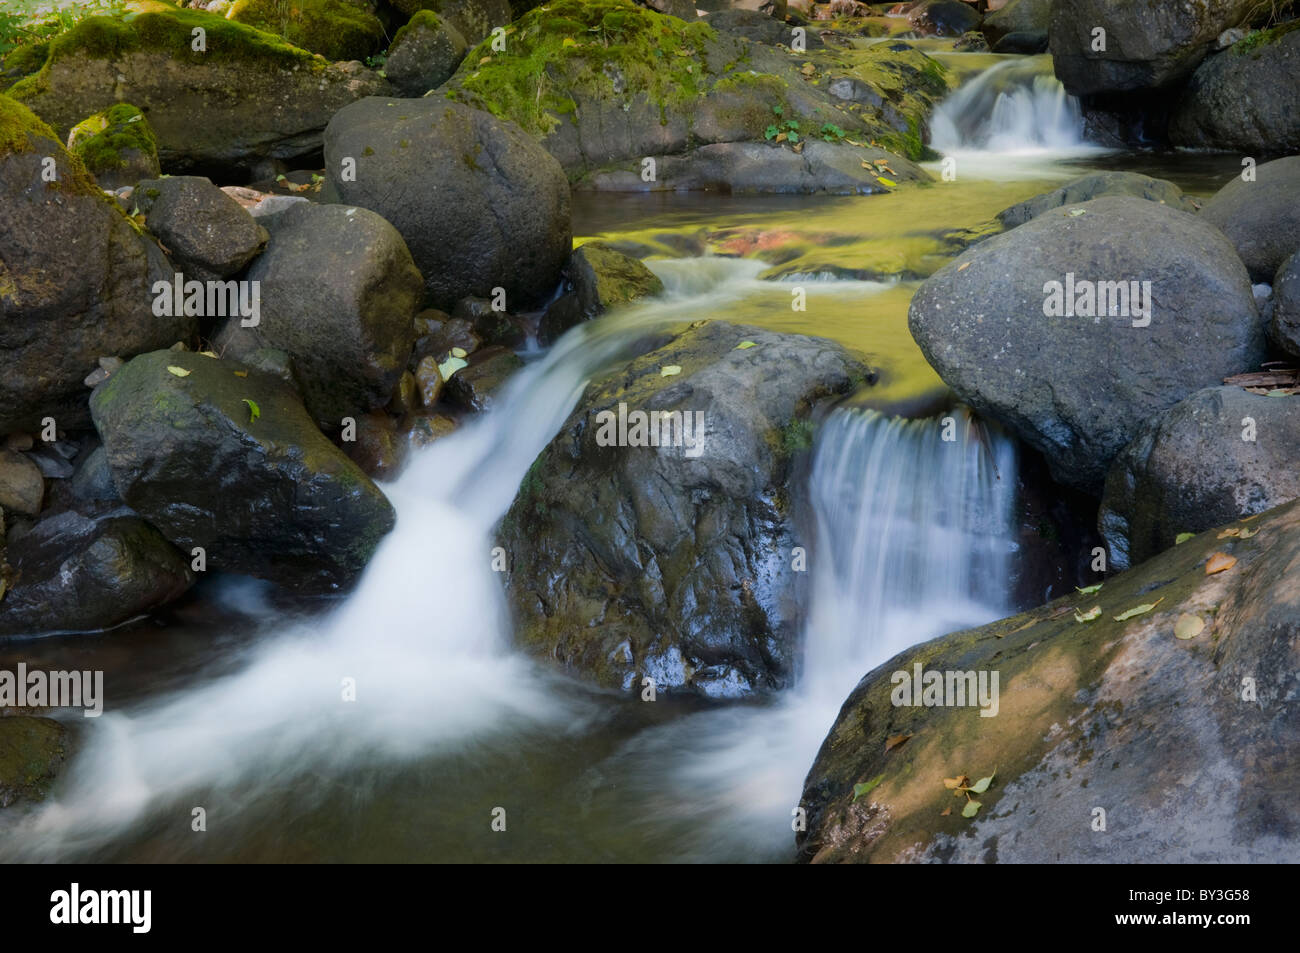 USA, Oregon, small waterfall Stock Photo